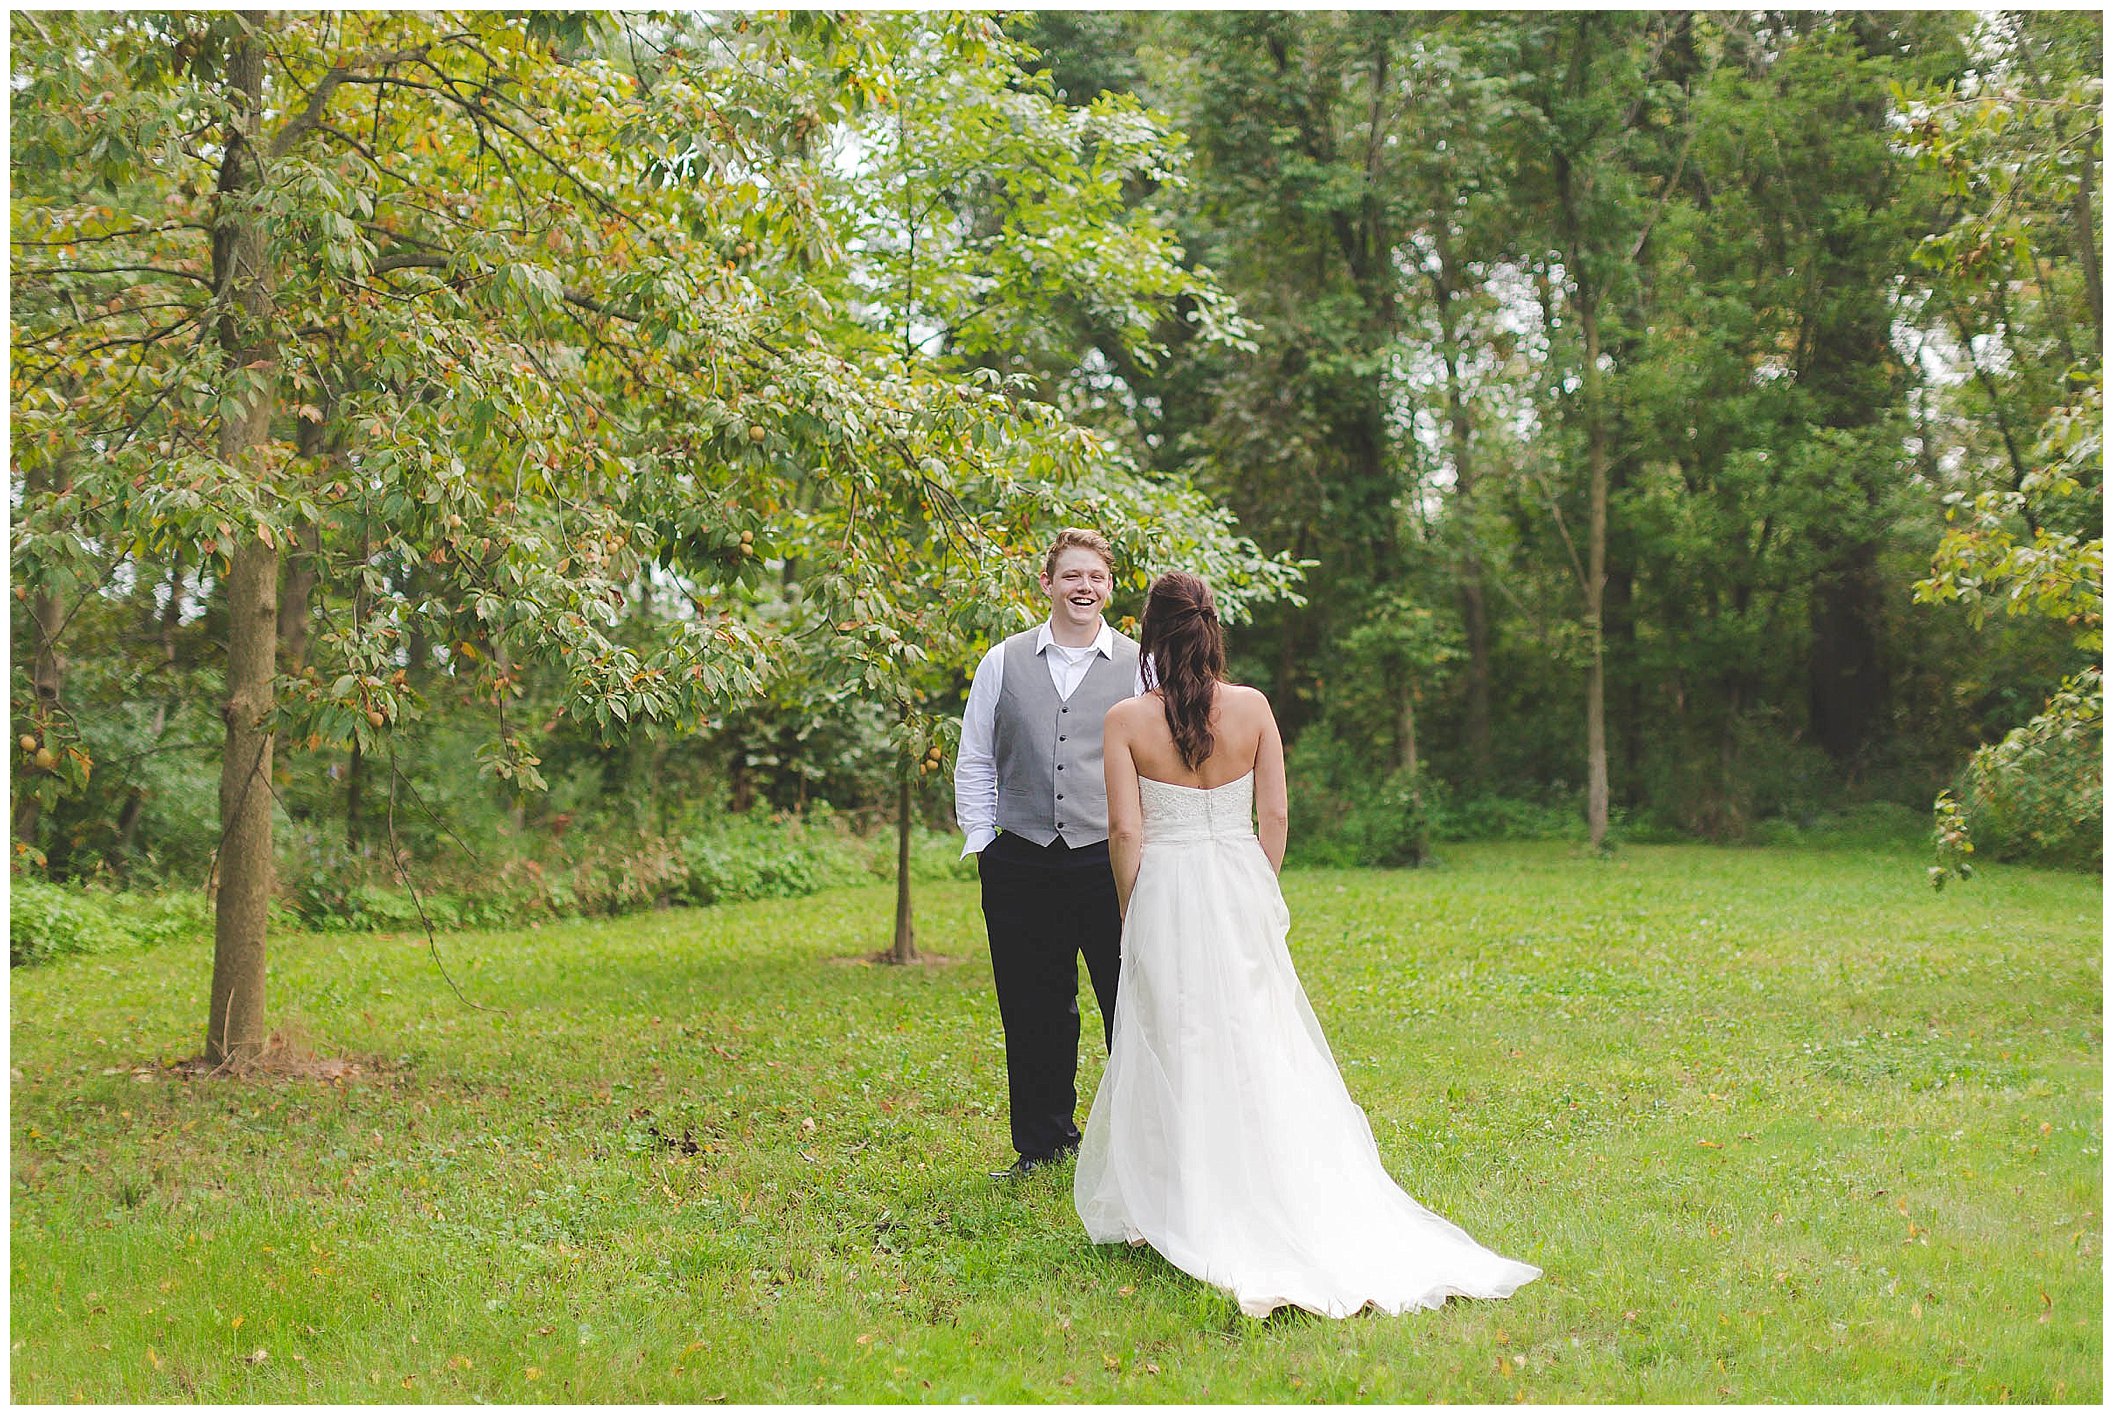 Stunning backyard wedding with twinkly lights, Fort Wayne Indiana Wedding Photographer_0032.jpg